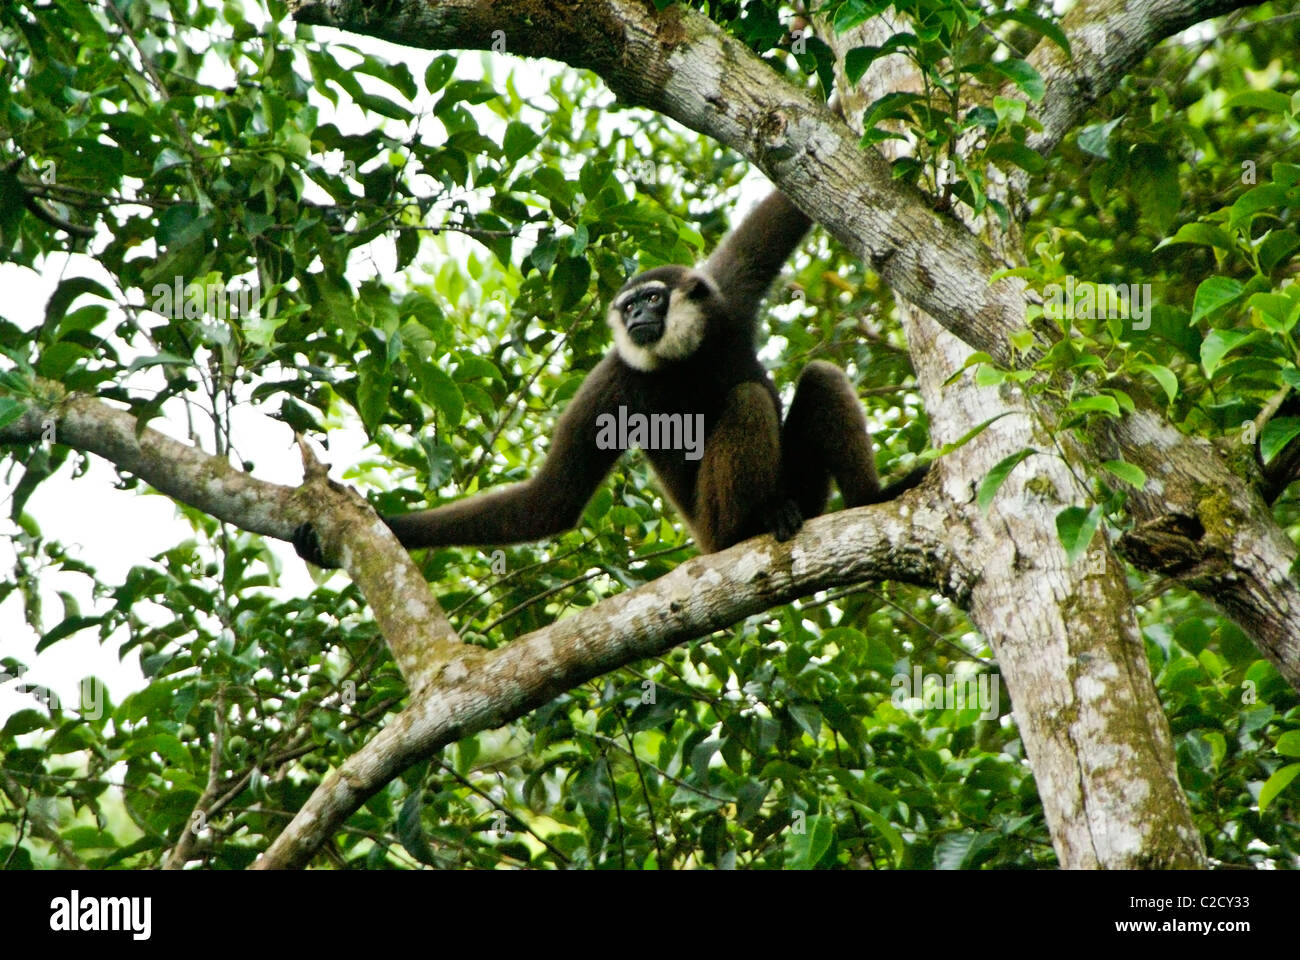 Agile Gibbon (männlich) sitzt im Baum, Borneo, Indonesien Stockfoto